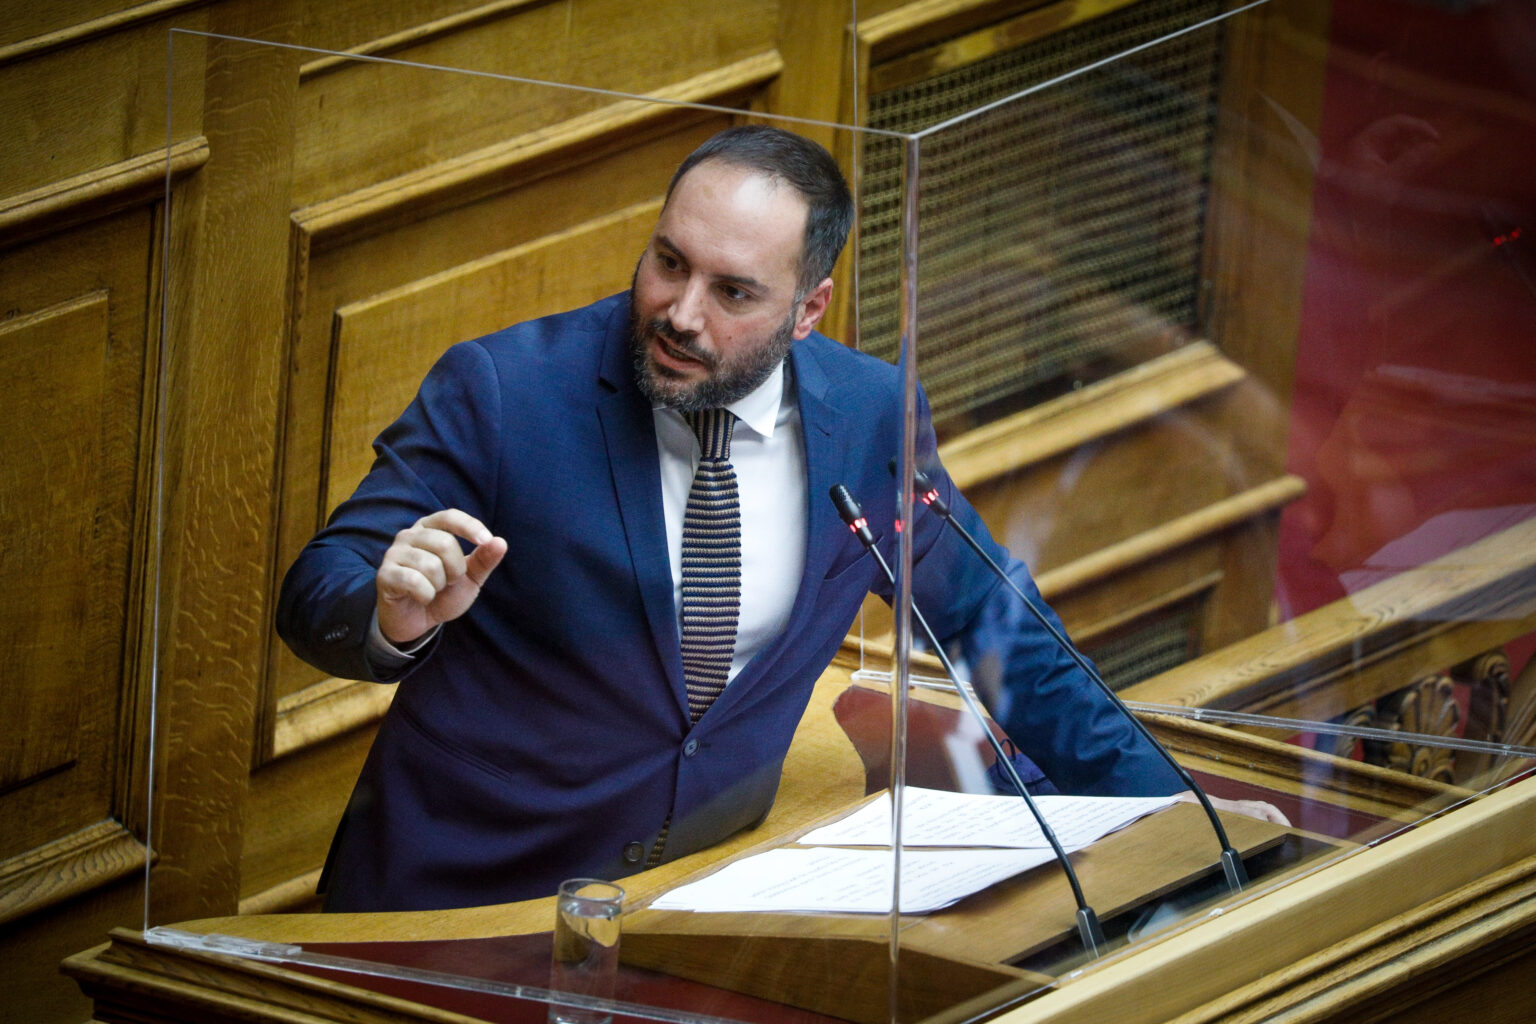 Χατζηγιαννάκης: “Μπαλάκι” αρμοδιοτήτων μεταξύ Περιφερειάρχη και επιτροπής Μπένου